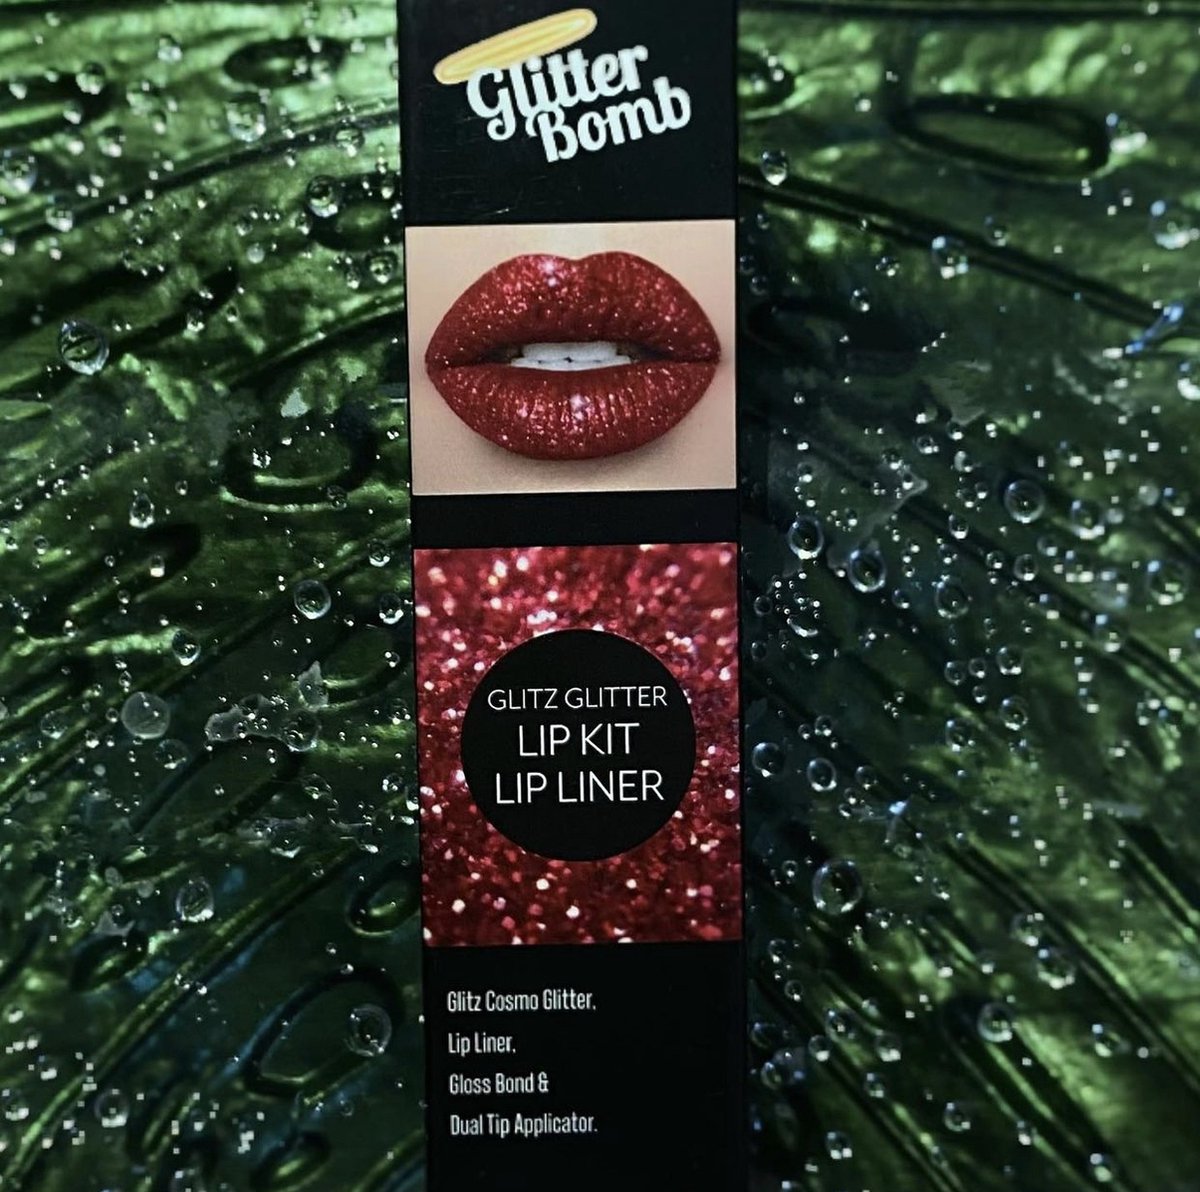 Glitterbomb Glitz Glitter Lipkit Glitter Lips